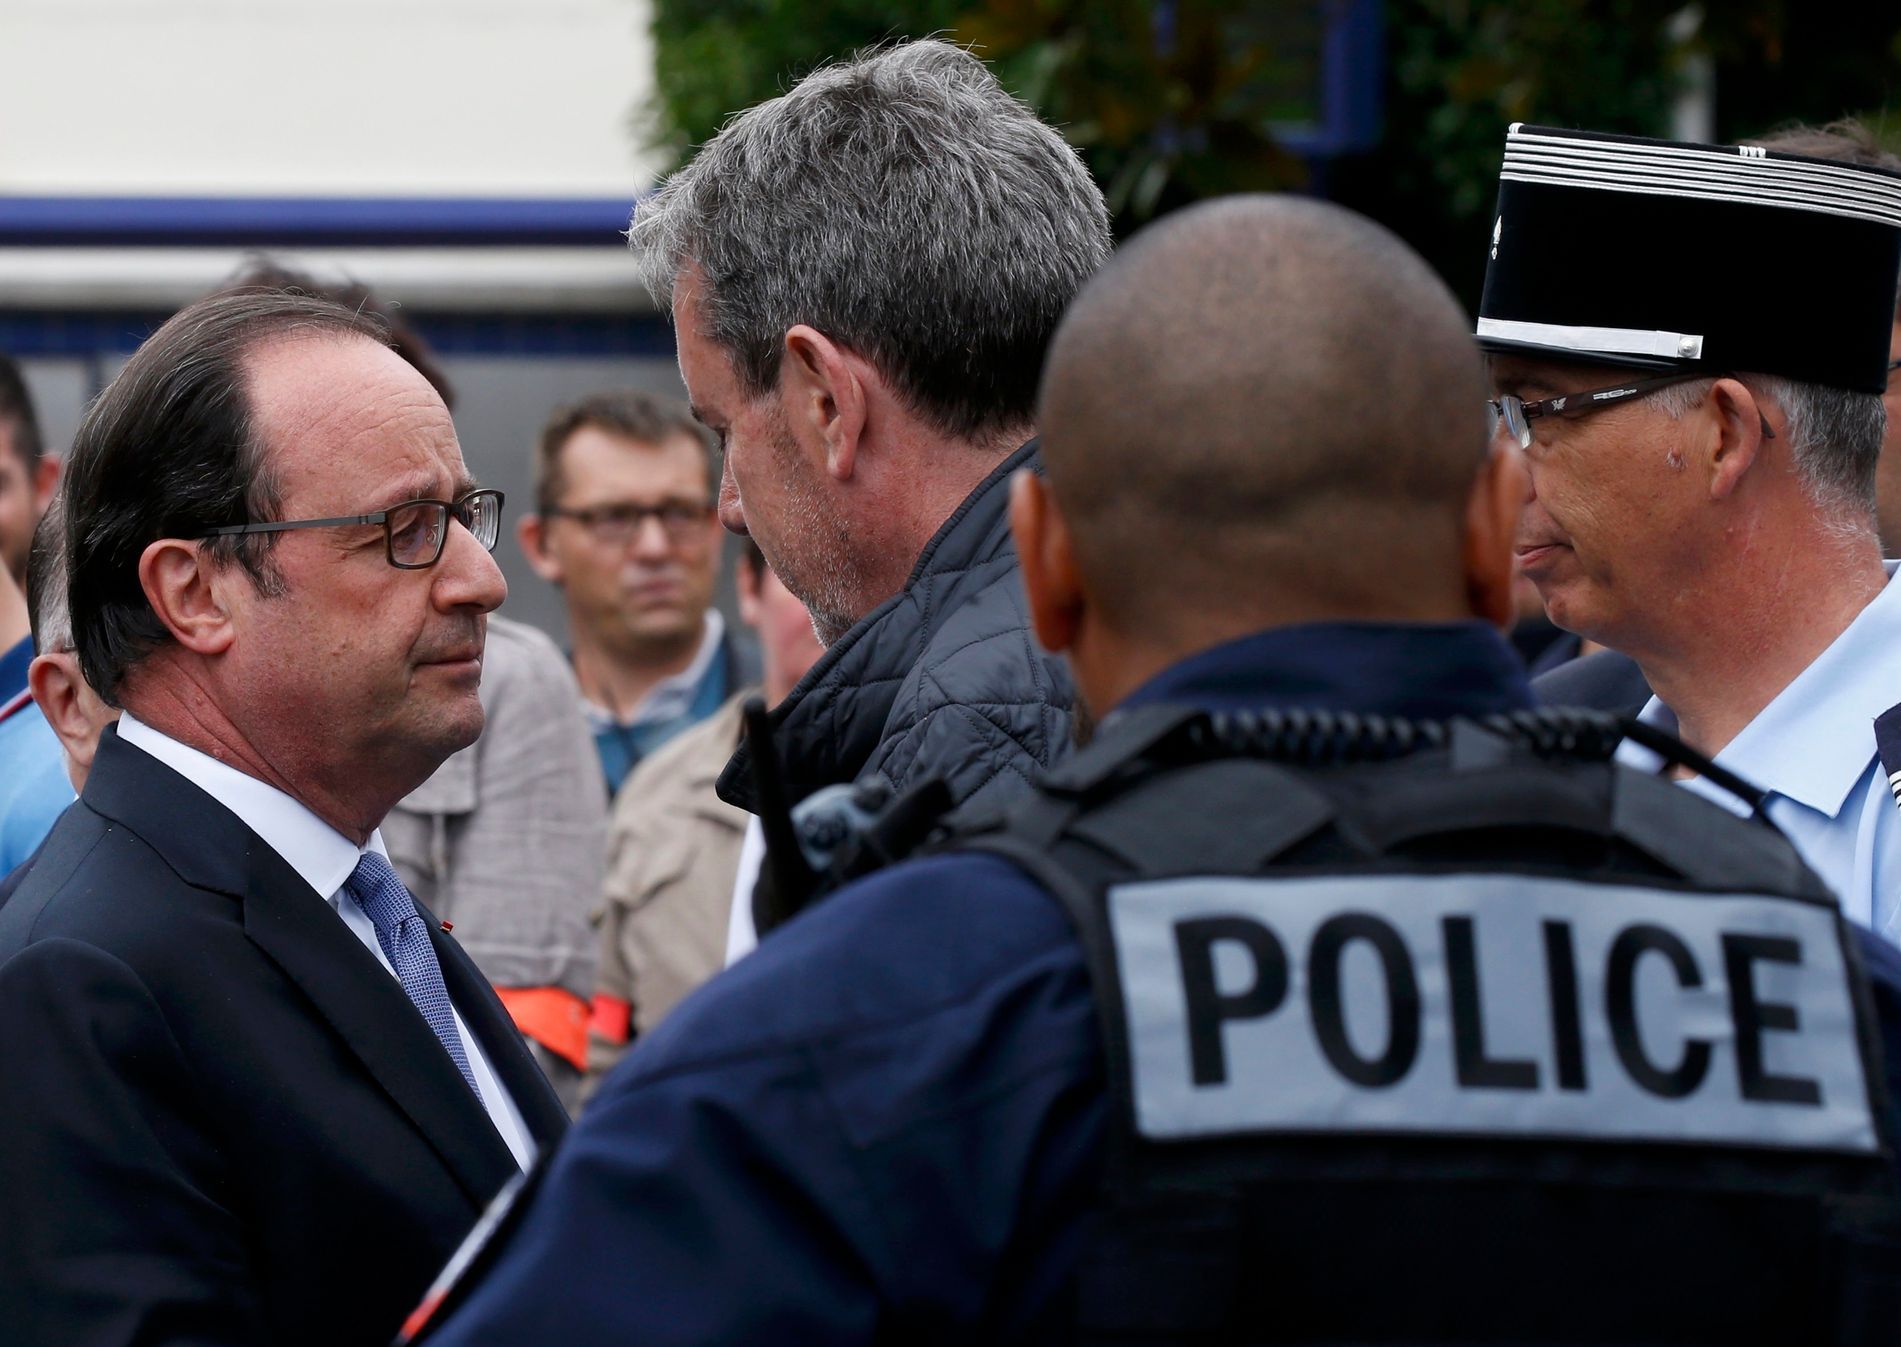 Francouzský prezident Hollande hovoří s policisty před místem úterního útoku